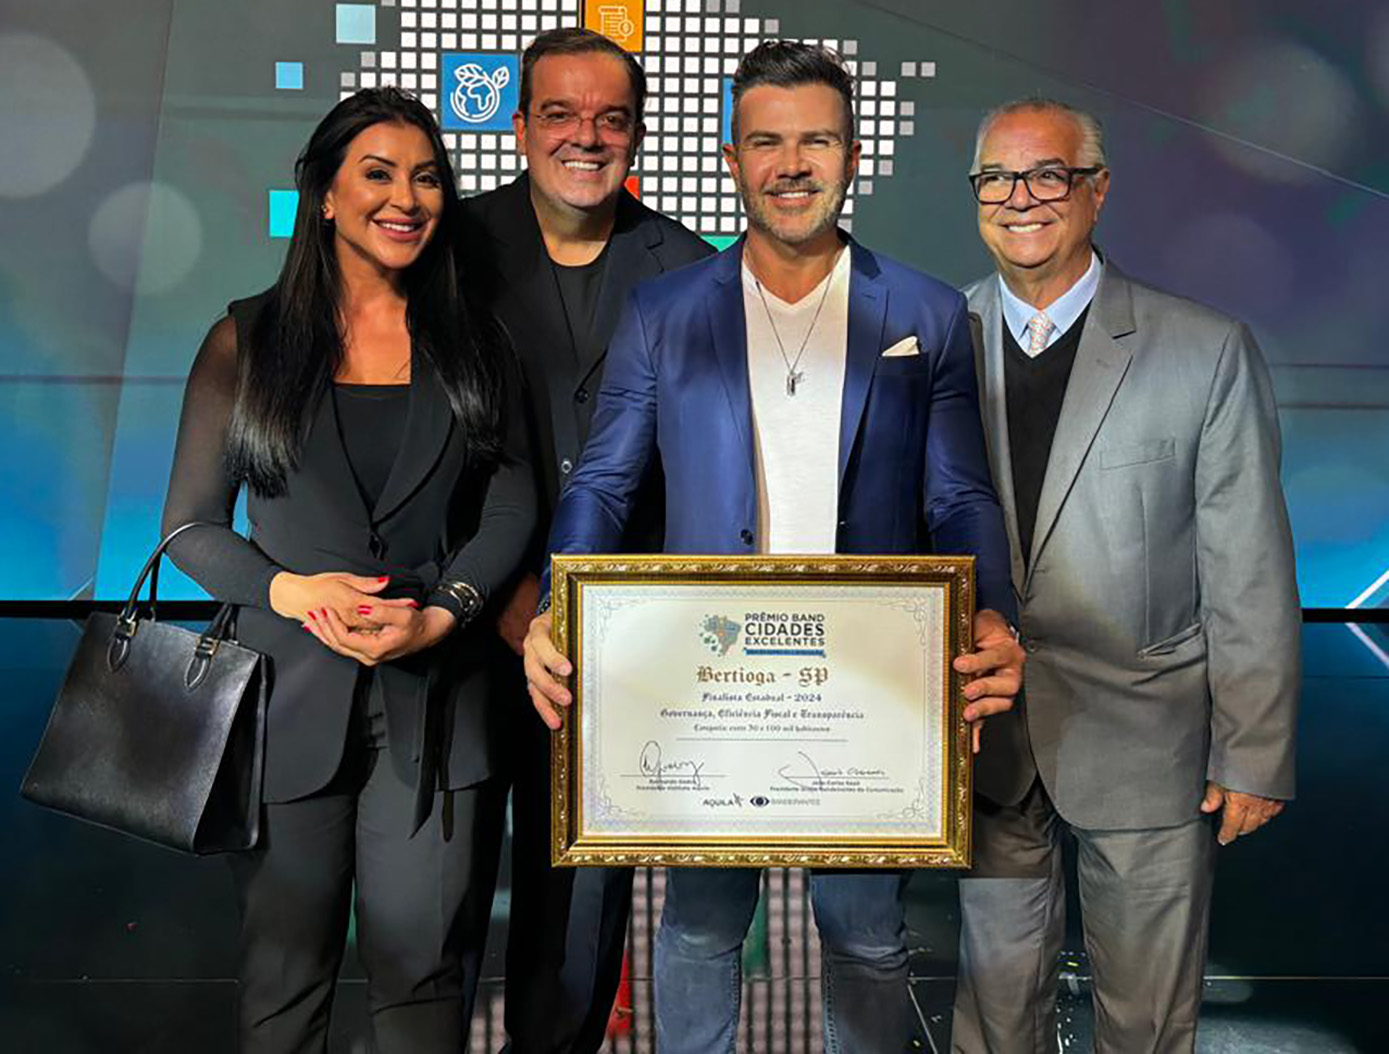 Bertioga é destaque nacional no Prêmio Band Cidades Excelentes